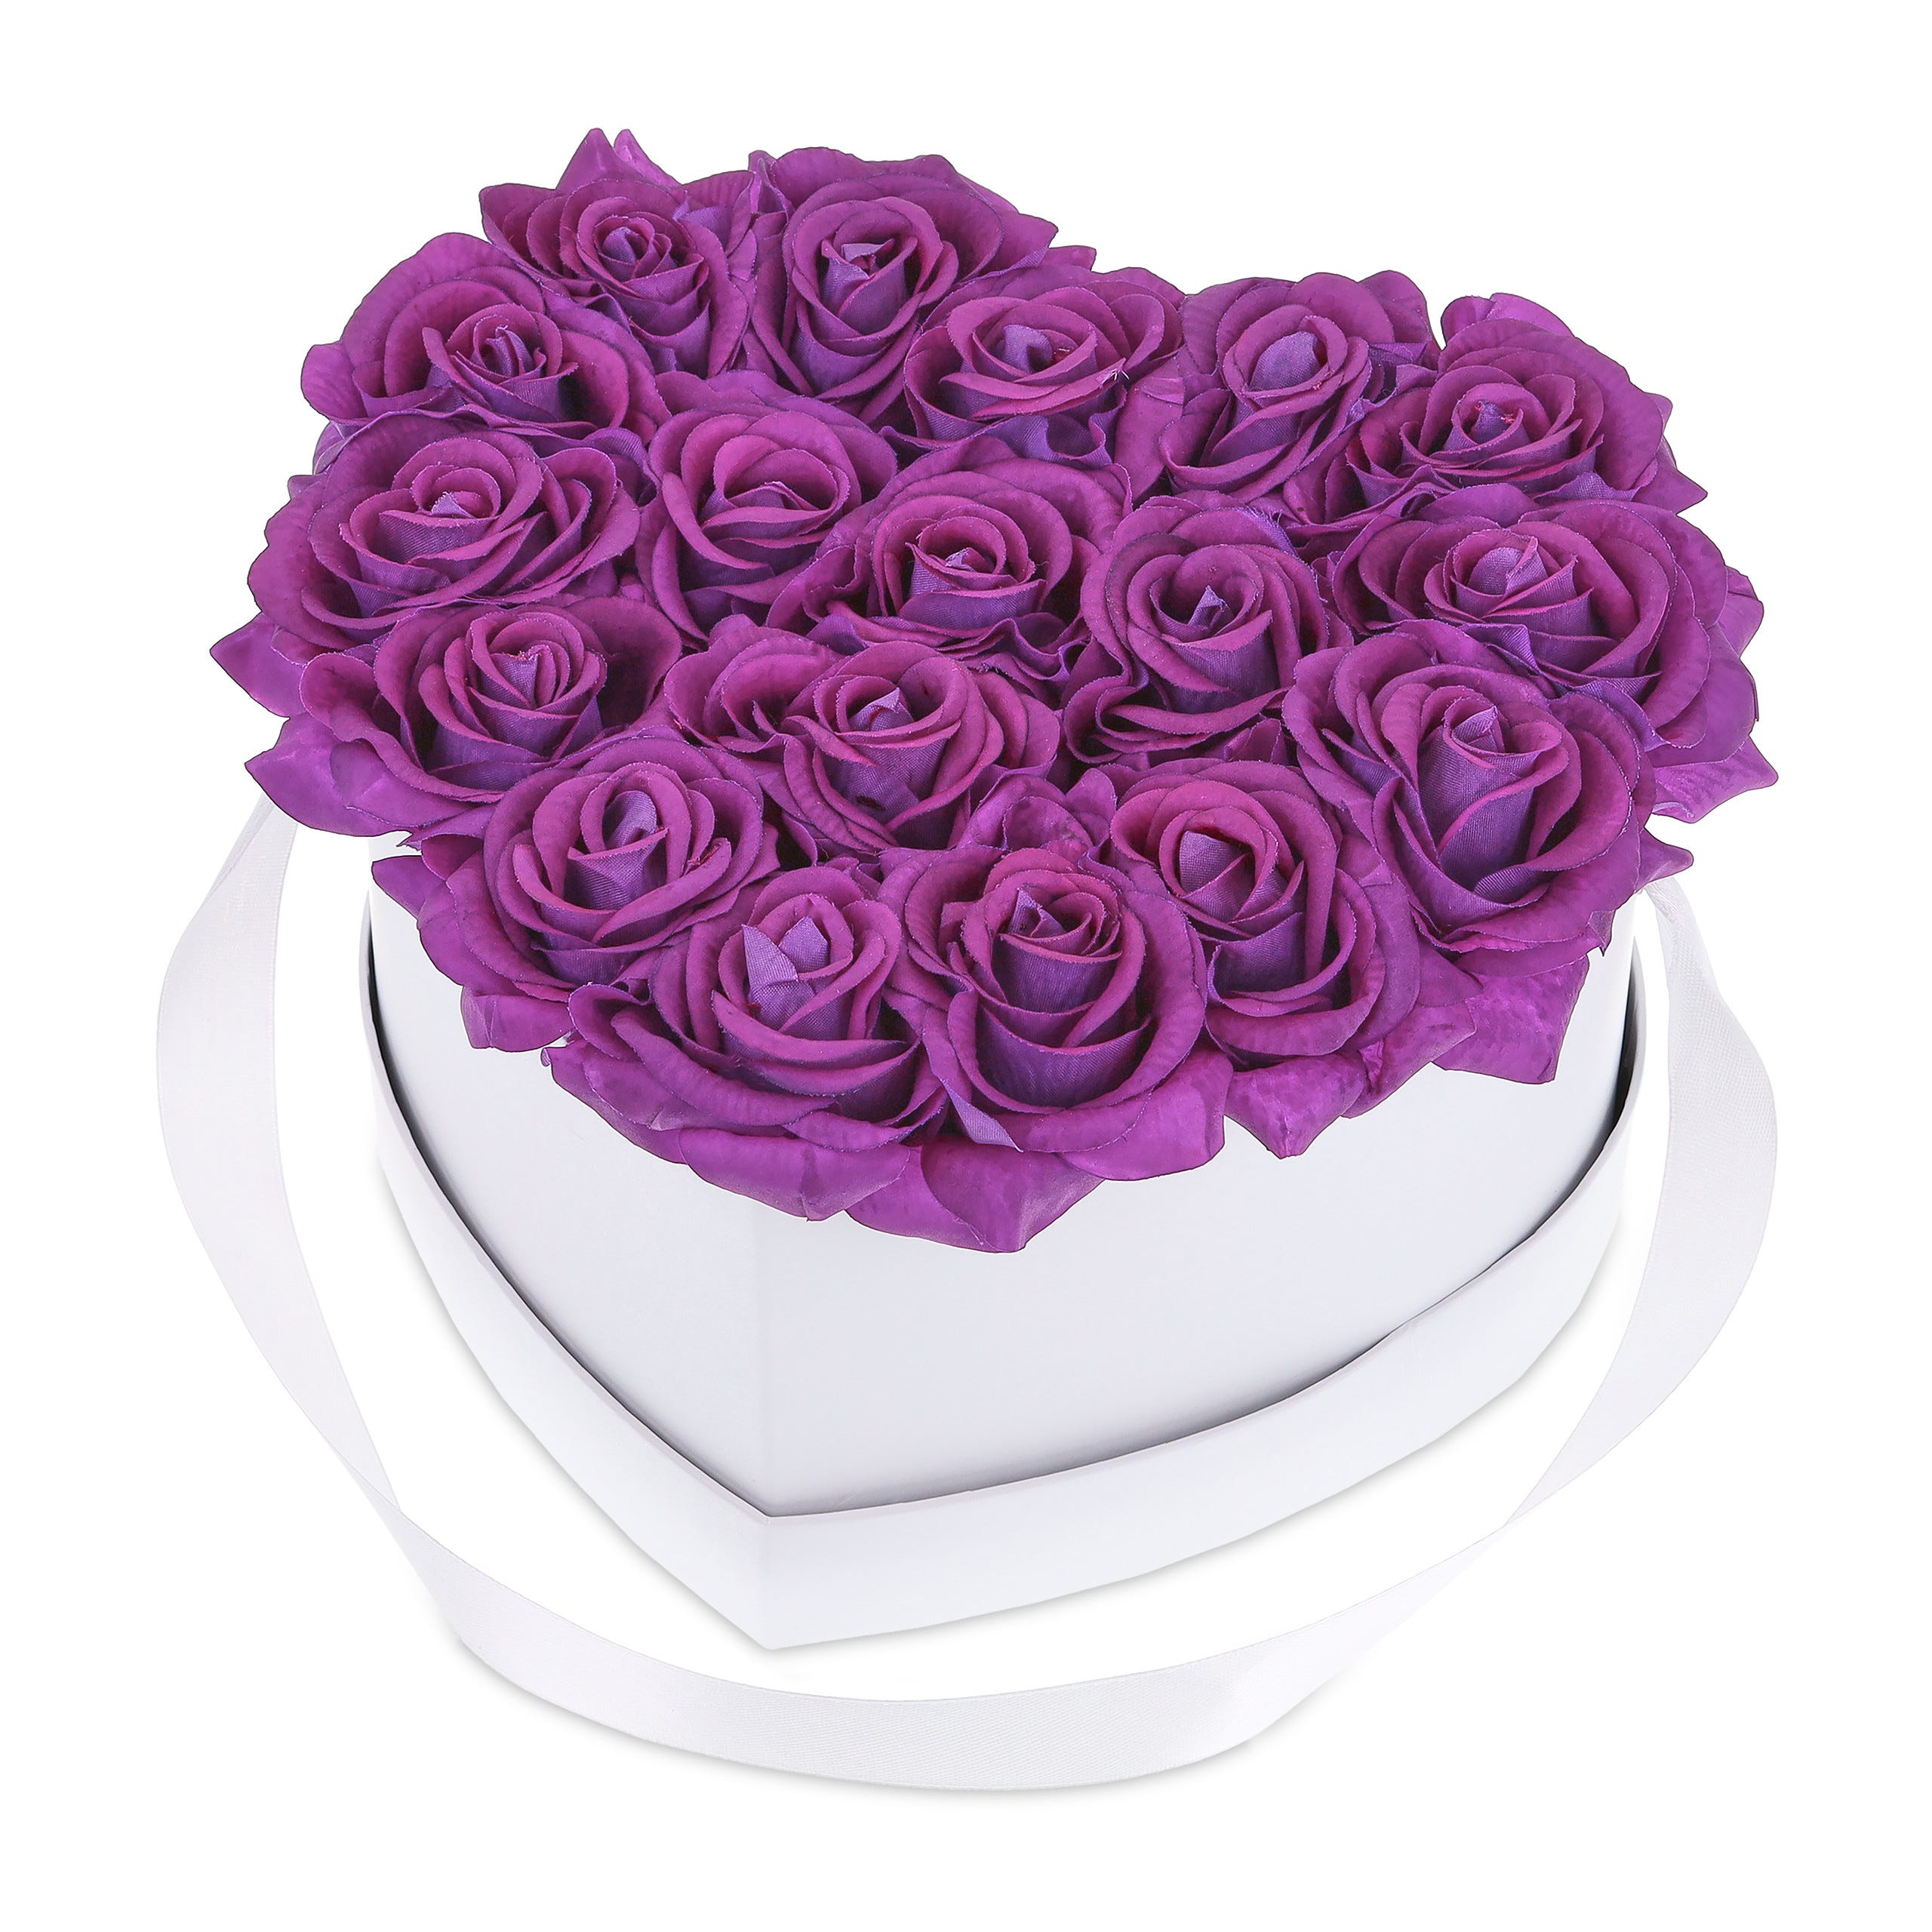 Boîte Haute pour Layer Cake - Rose avec fenêtre - 28x28x33cm - 123CAKE